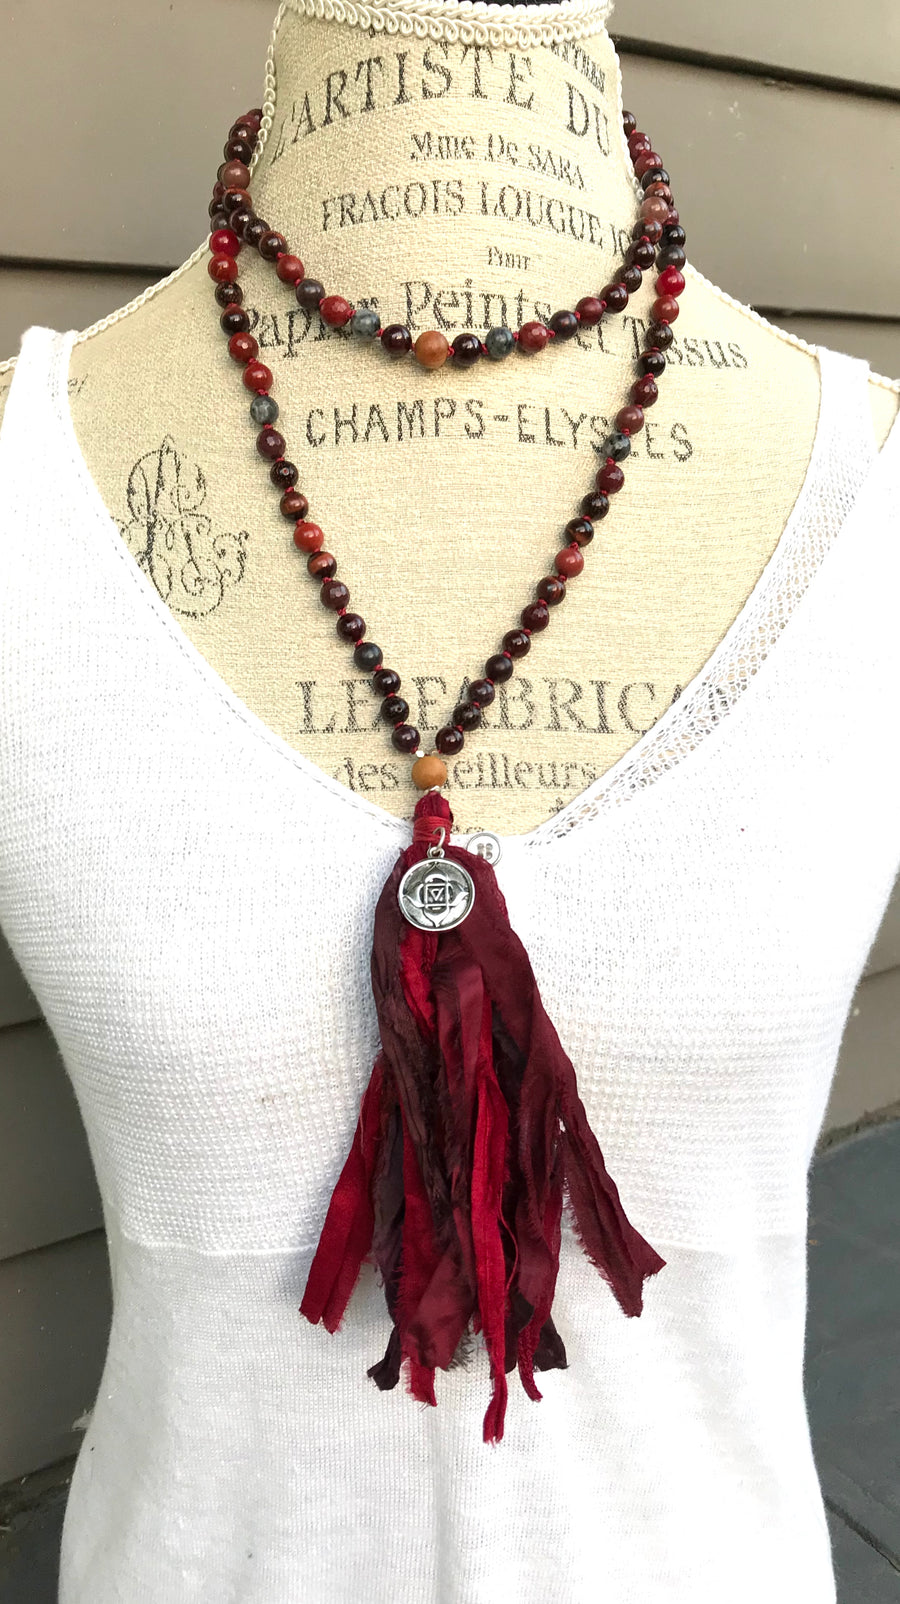 Root Chakra Mala Necklace * 108 Mala Beads * Muladahara Chakra Jewelry * Yoga Gift * Jewelry with Meaning * Meditation Beads